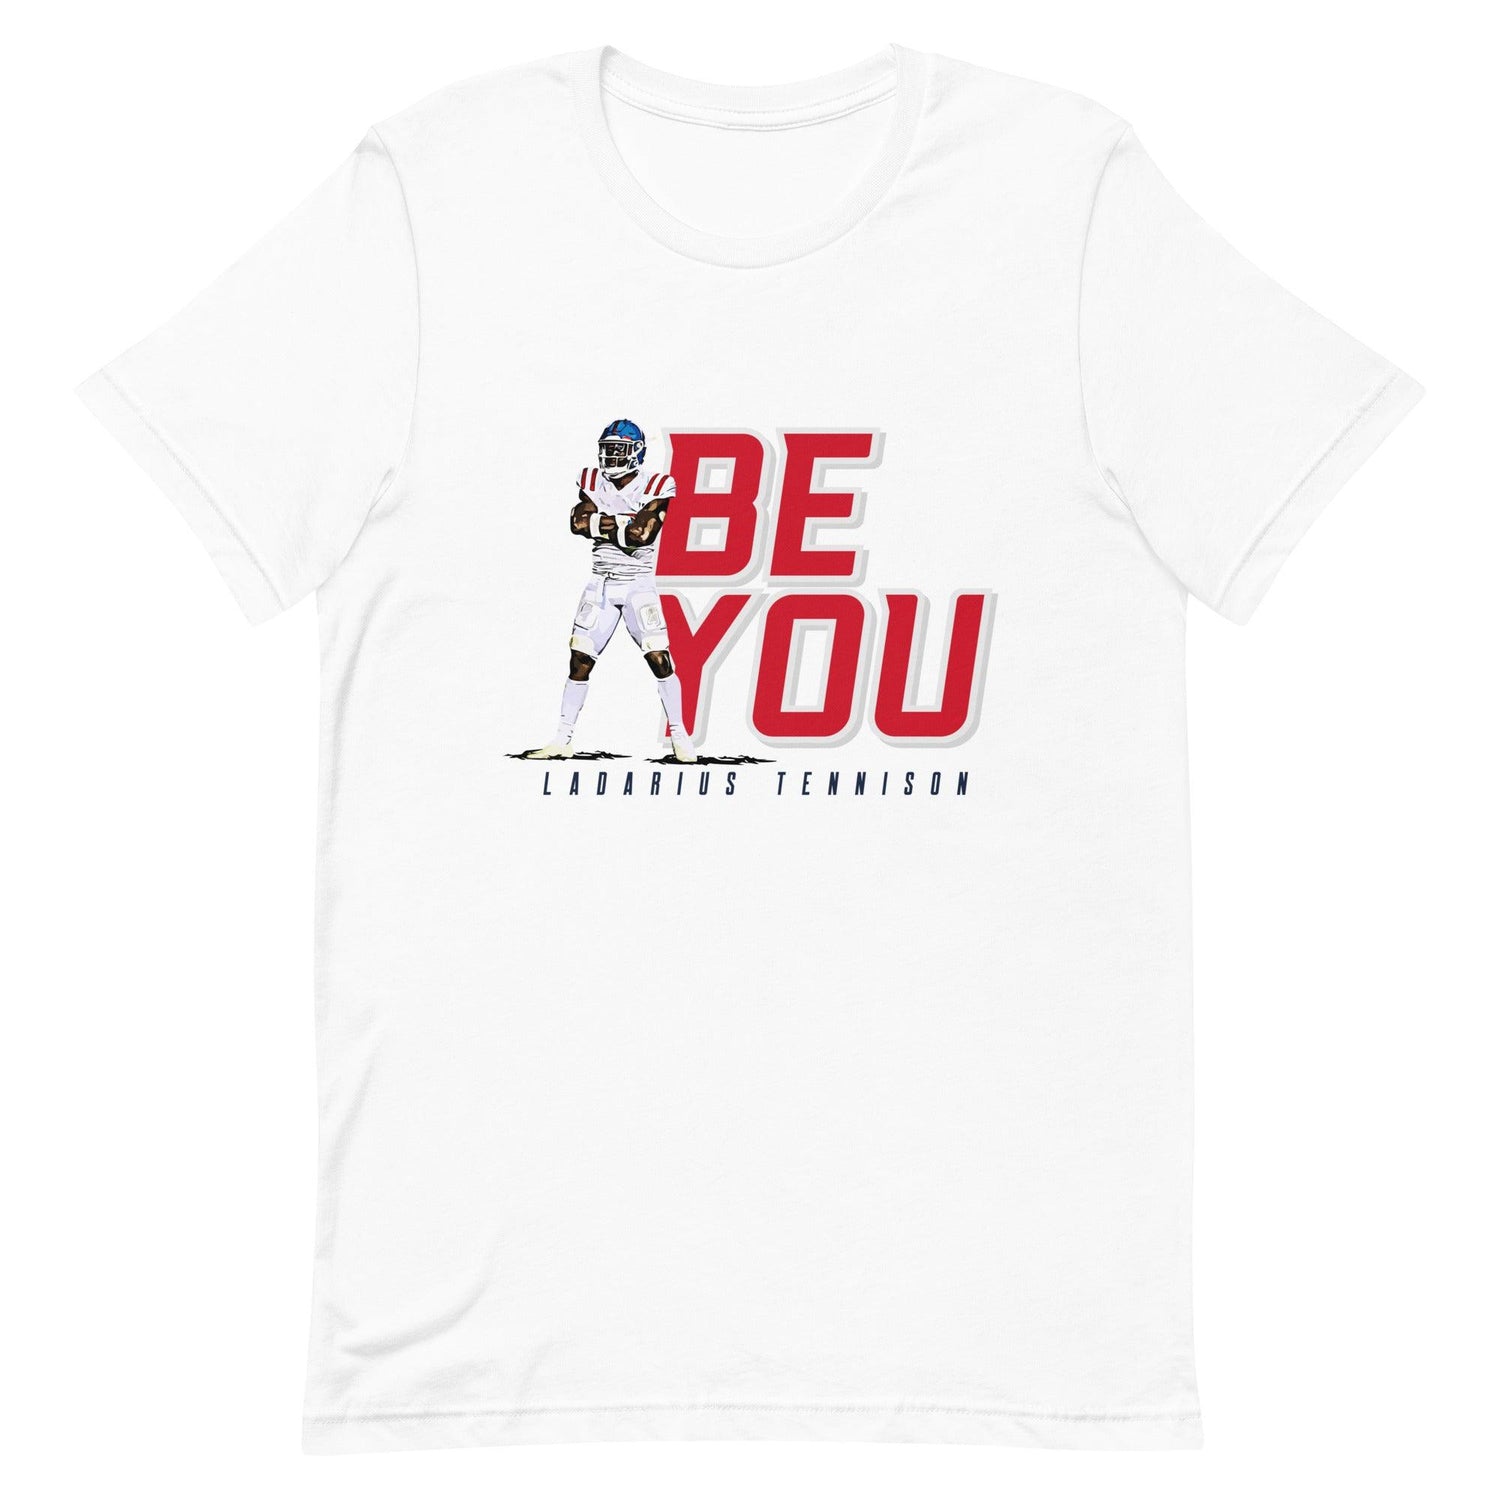 Ladarius Tennison "Be You" t-shirt - Fan Arch